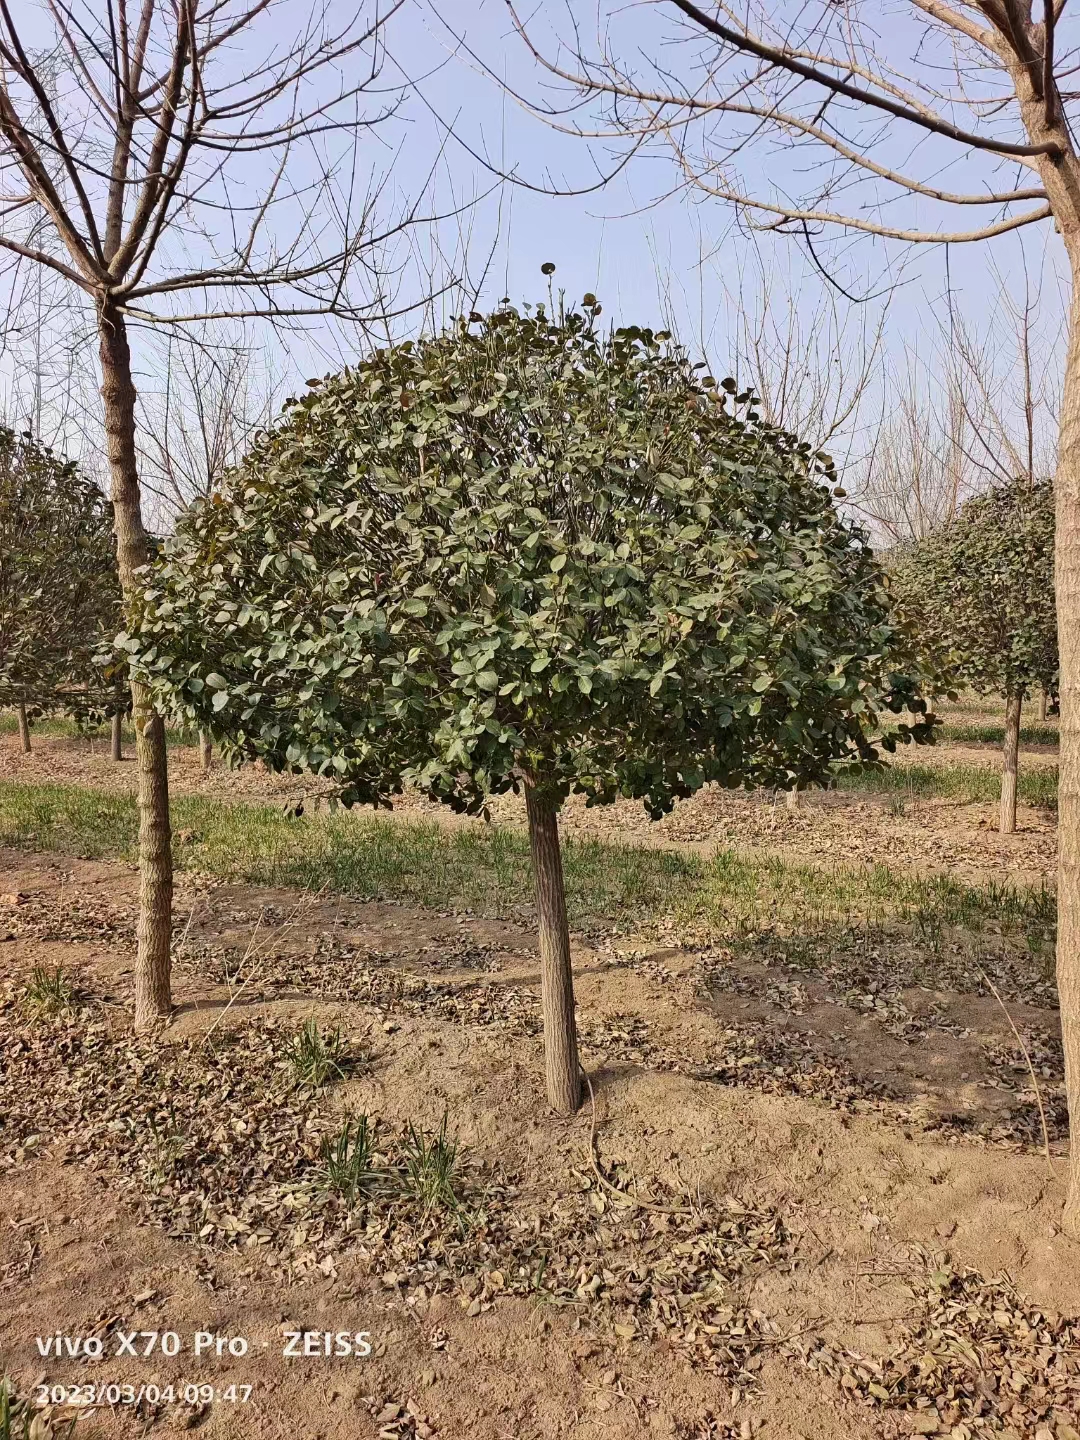 潍坊批发1米2的卫矛球厂家 绿化用卫矛球批发基地